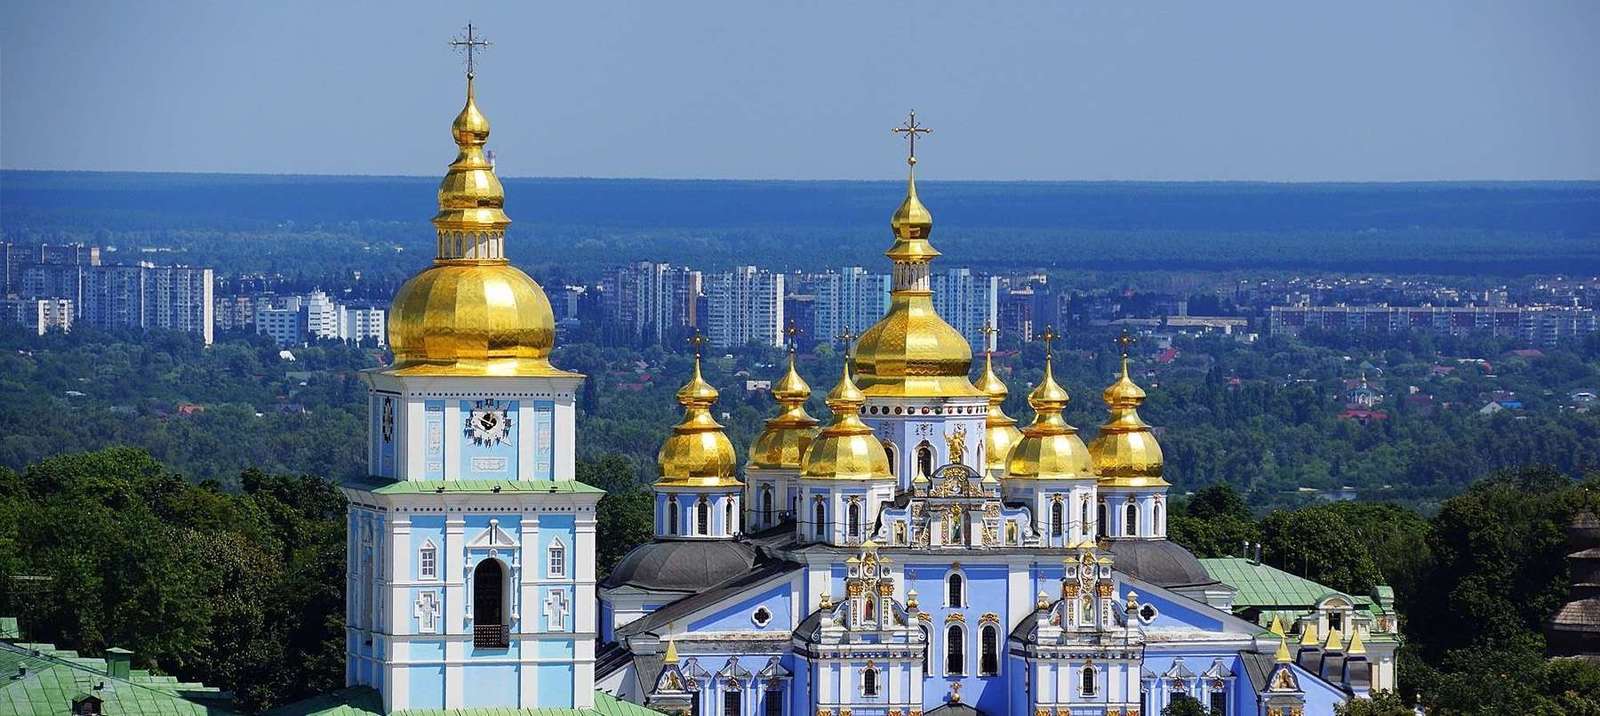 Ville de Kiev, Ukraine :: Lieux intéressants, attractions touristiques
